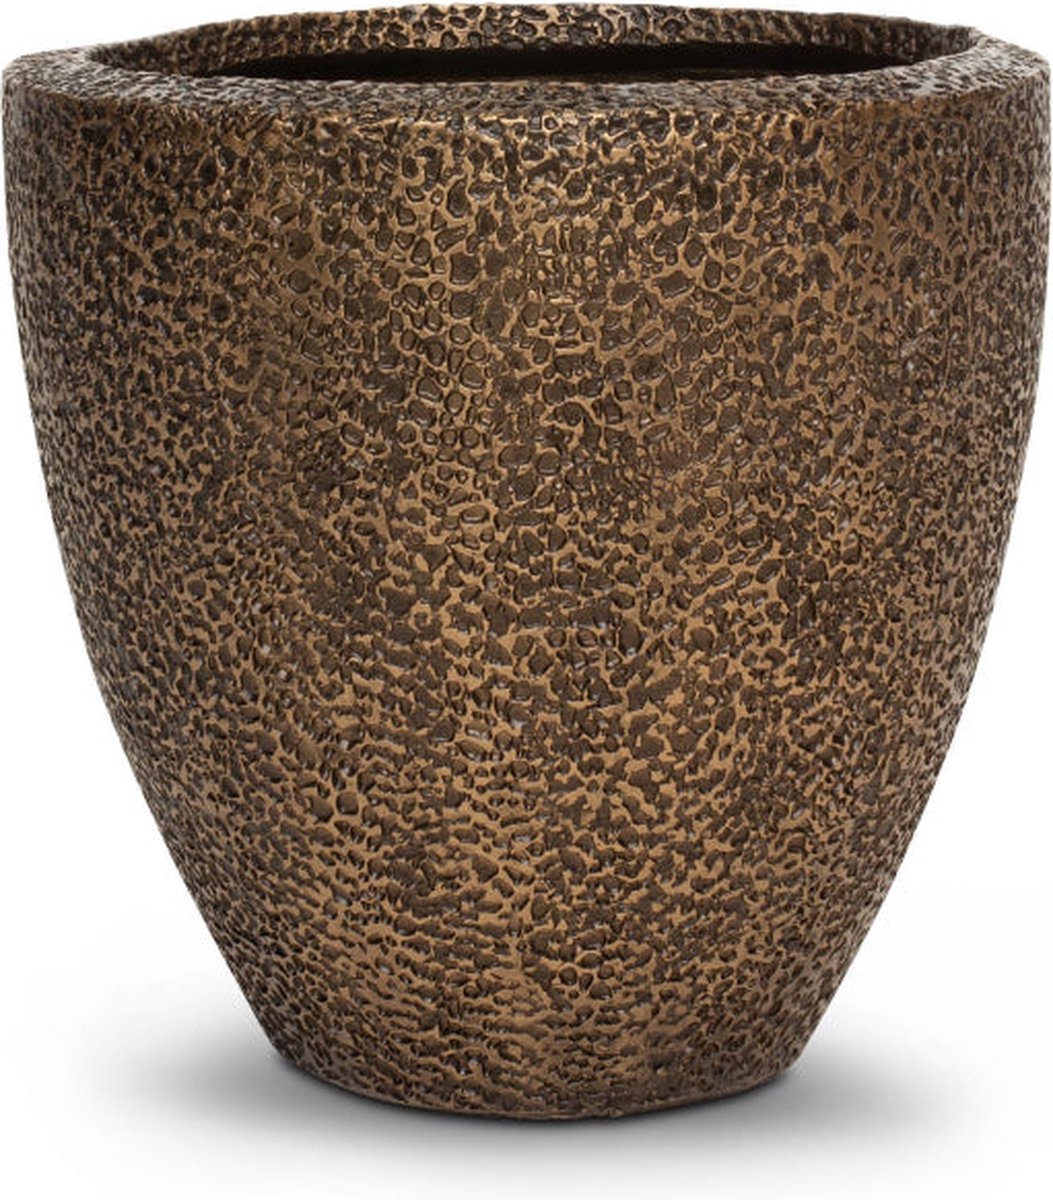 Luxe Plantenpot XL | Koper Brons Antiek Look | Koraal Brons Plantenbak Design | Grote bloempot voor binnen en buiten | Bloembak | Vorstbestendig | 41 x 41 cm